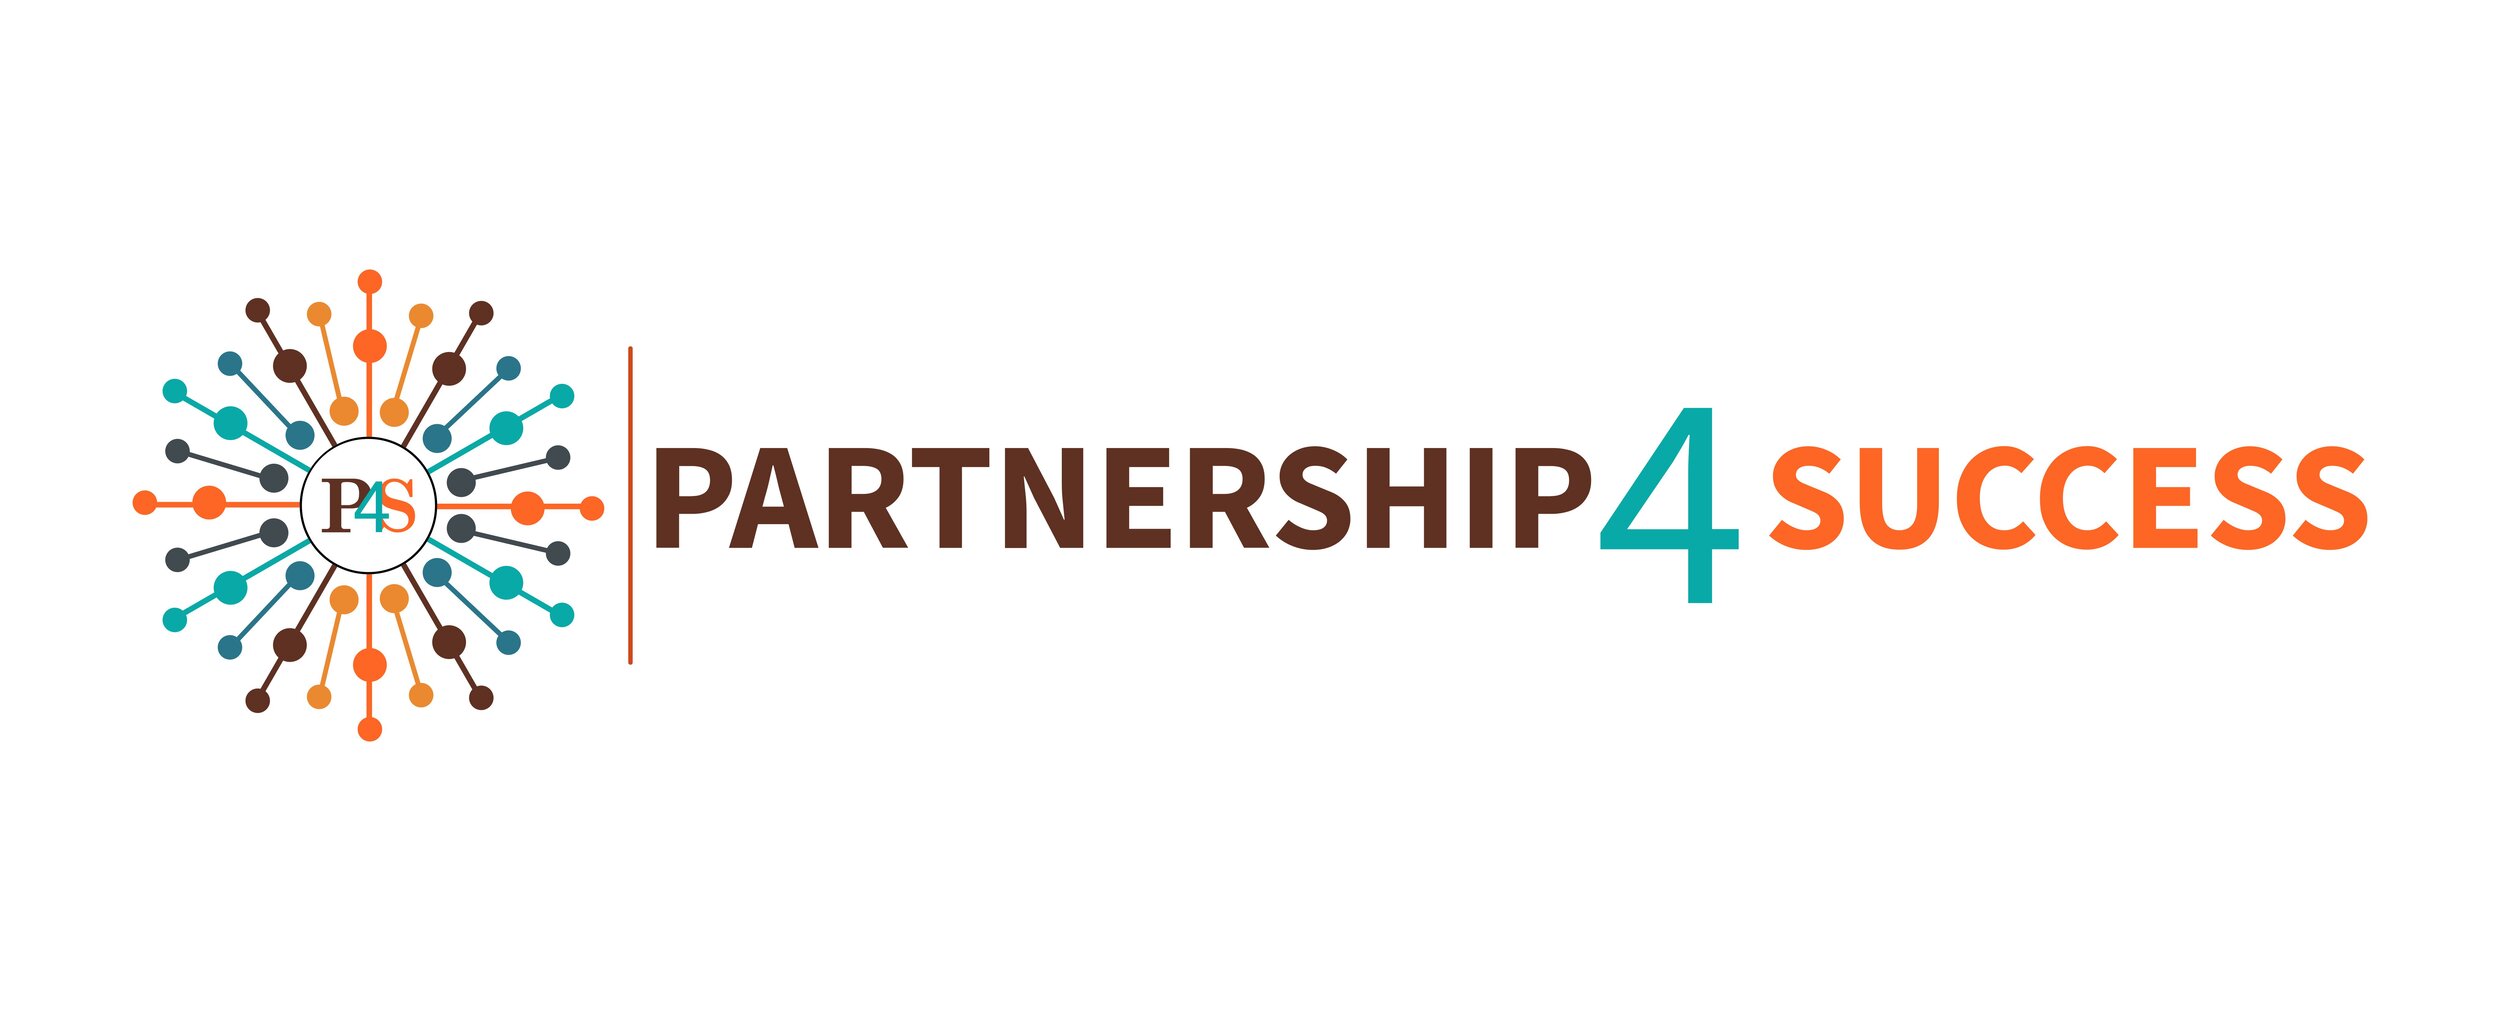 Partnership4Success